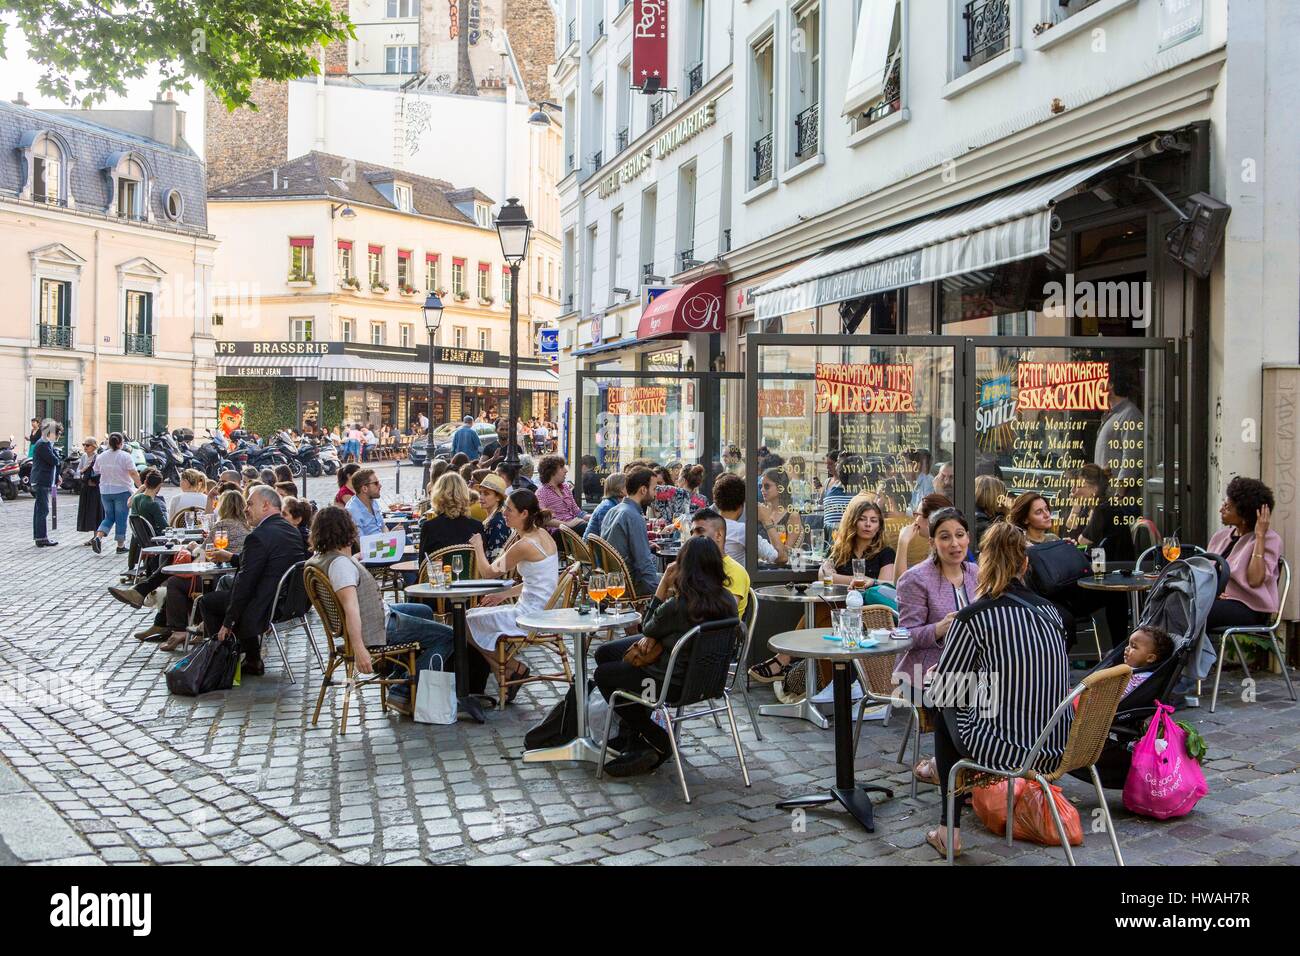 France, Paris, Montmartre district, Abbesses square Stock Photo